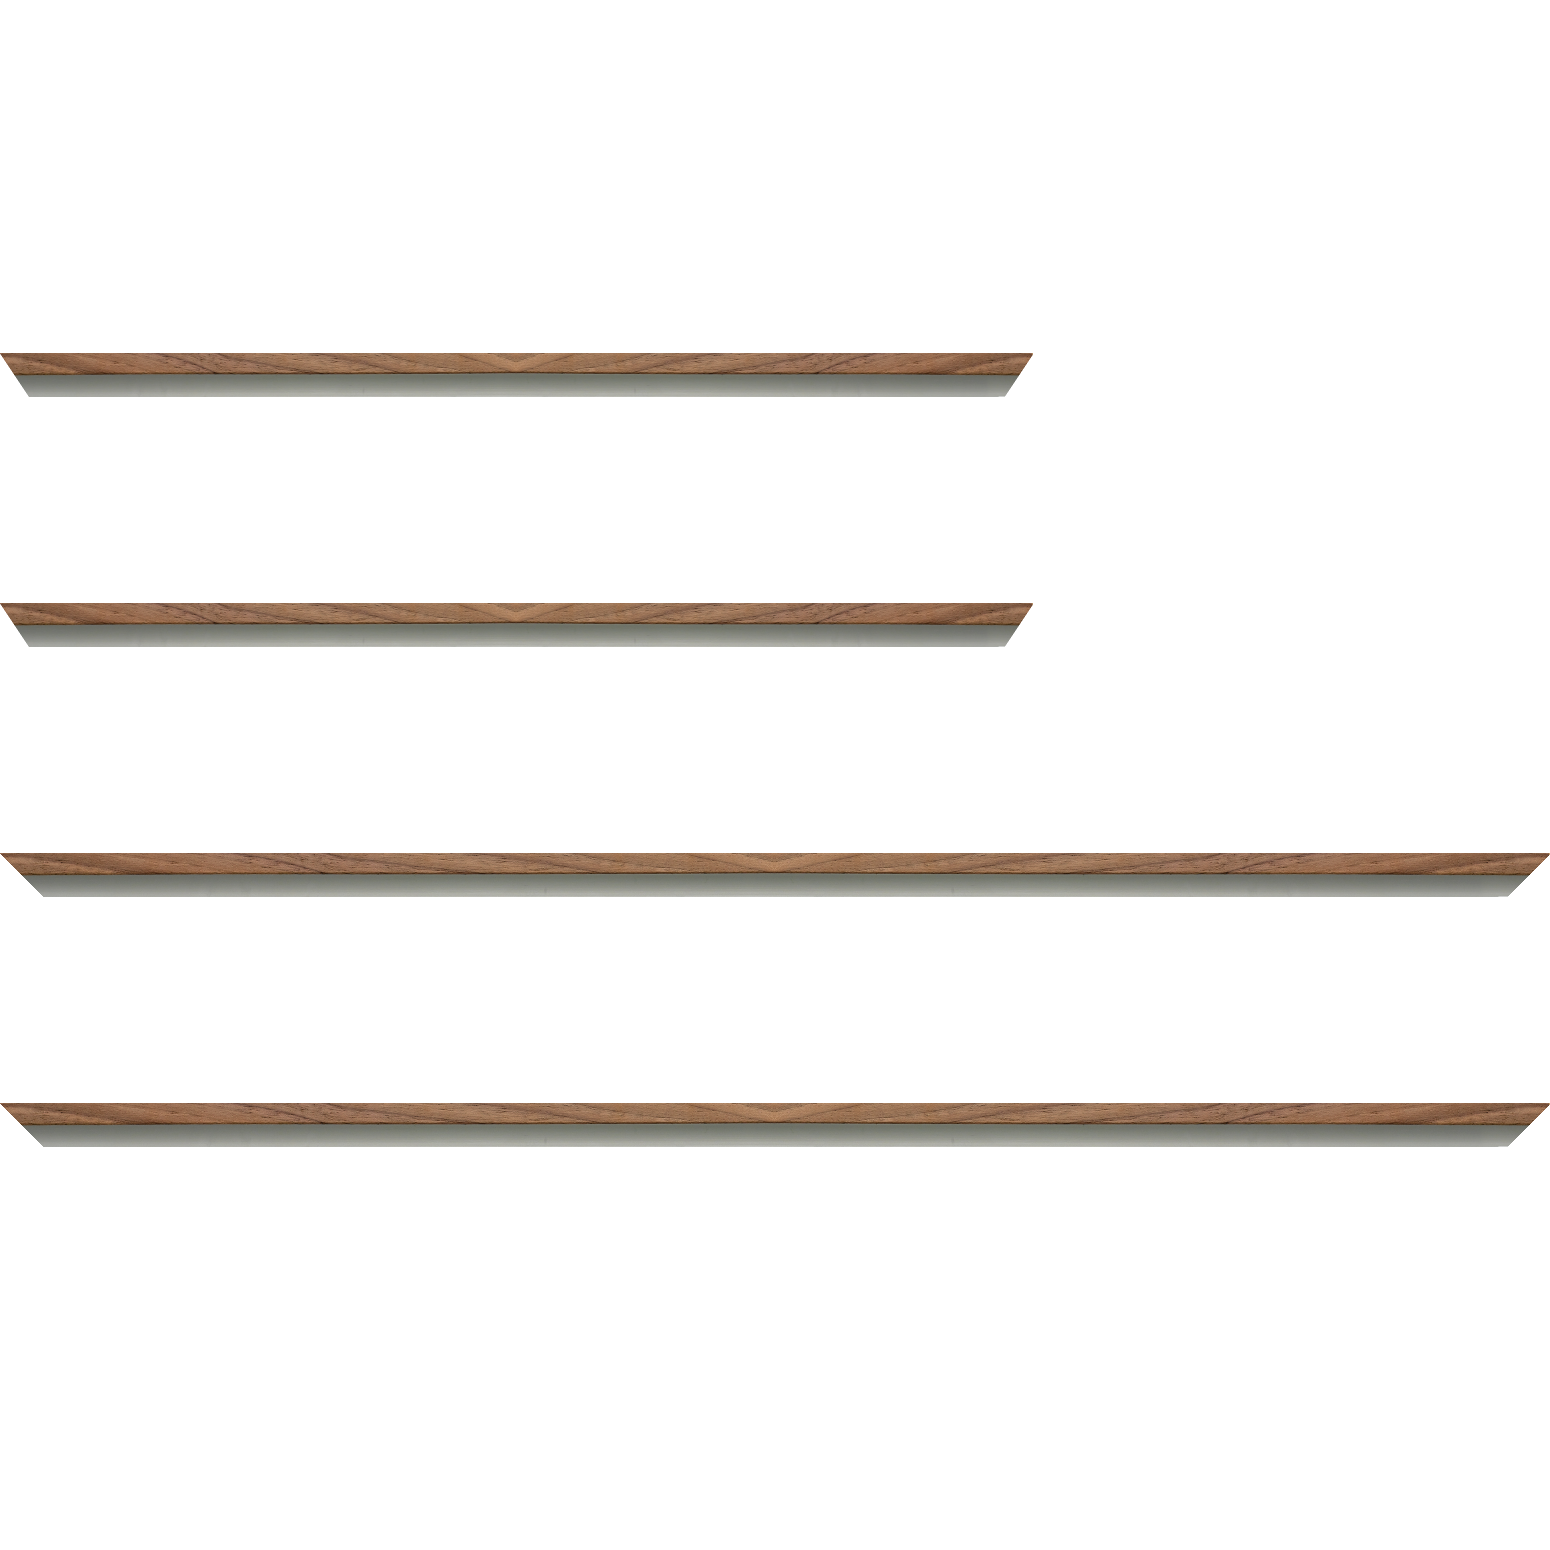 Baguette aluminium profil plat largeur 8mm, placage véritable noyer ,(le sujet qui sera glissé dans le cadre sera en retrait de 6mm de la face du cadre assurant un effet très contemporain) mise en place du sujet rapide et simple: assemblage du cadre par double équerre à vis (livré avec le système d'accrochage qui se glisse dans le profilé) encadrement non assemblé,  livré avec son sachet d'accessoires - 30x60